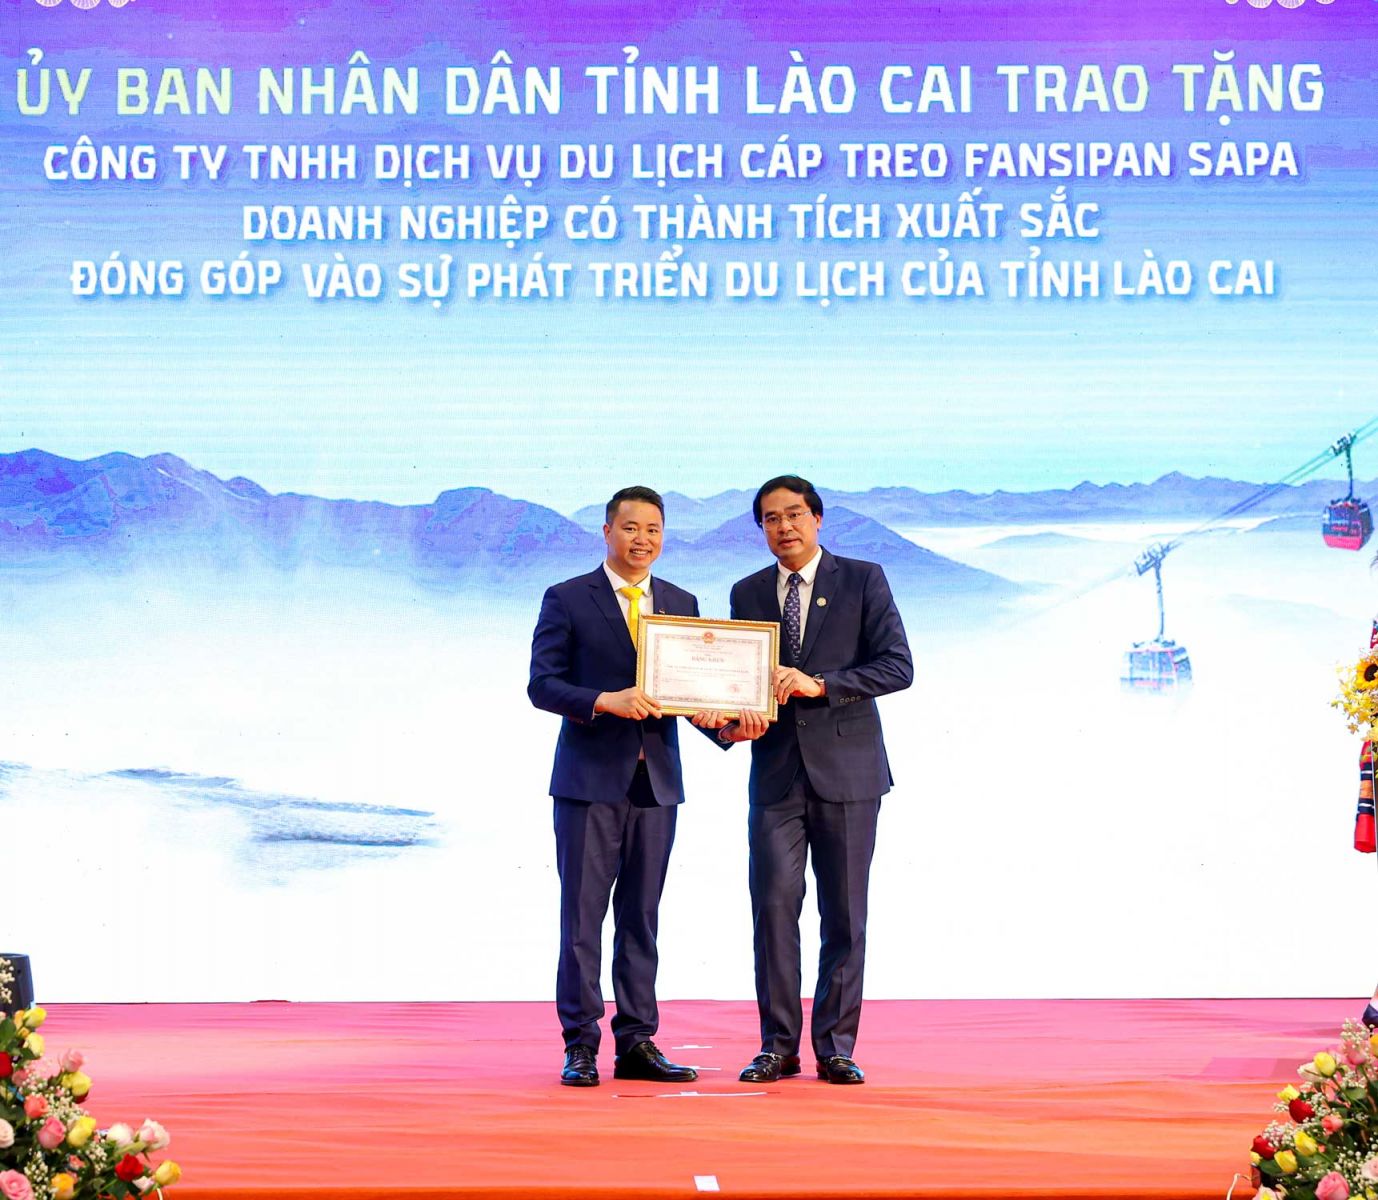 Ông Trịnh Xuân Trường - Chủ tịch UBND tỉnh Lào Cai (phải) trao bằng khen cho ông Nguyễn Xuân Chiến, giám đốc KDL Sun World Fansipan Legend, ghi nhận những đóng góp của doanh nghiệp với sự phát triển của du lịch tỉnh Lào Cai